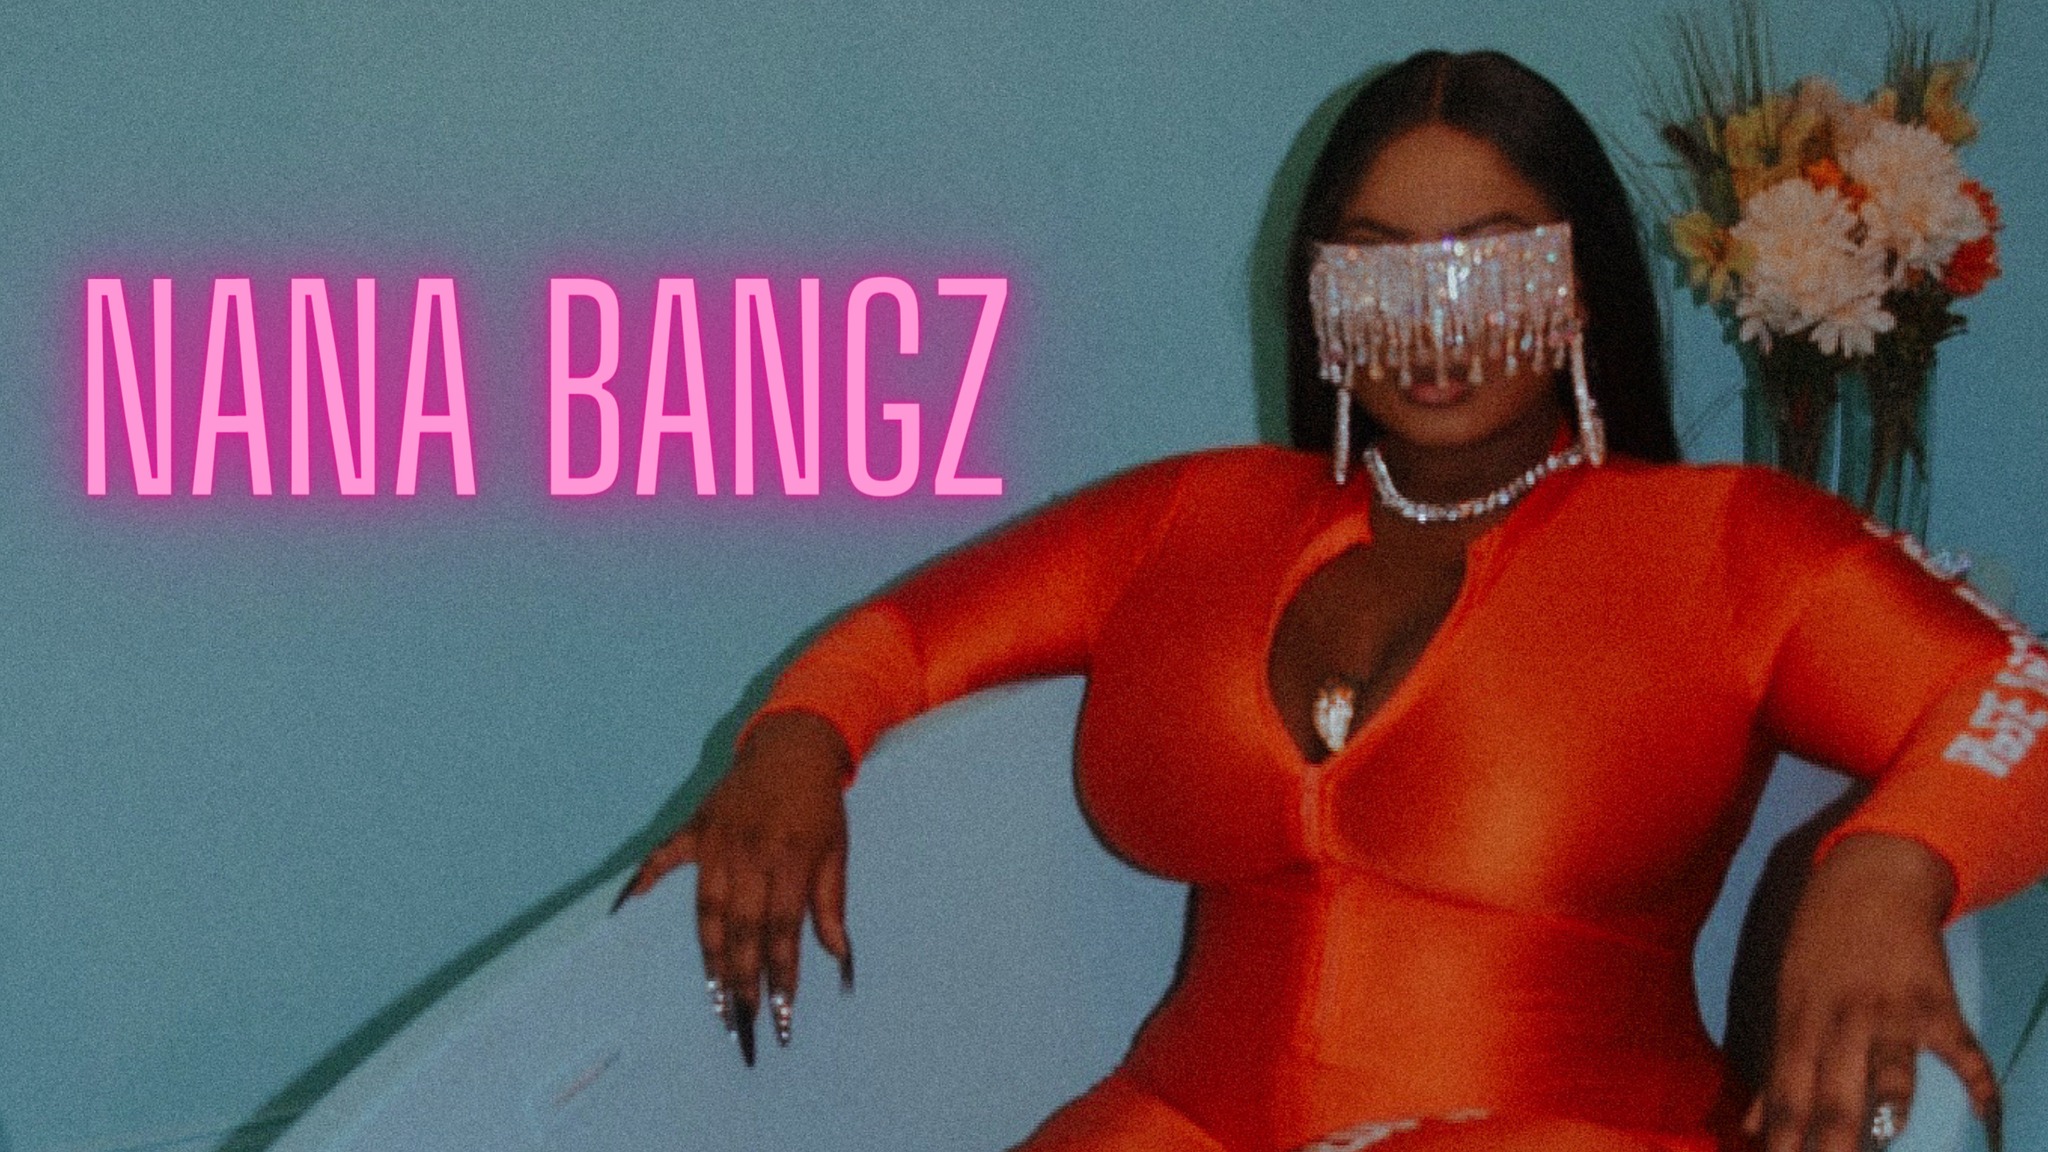 Pleins feux sur un nouvel artiste : l'artiste trap Nana Bangz pourrait être le prochain grand nom du rap [Video]